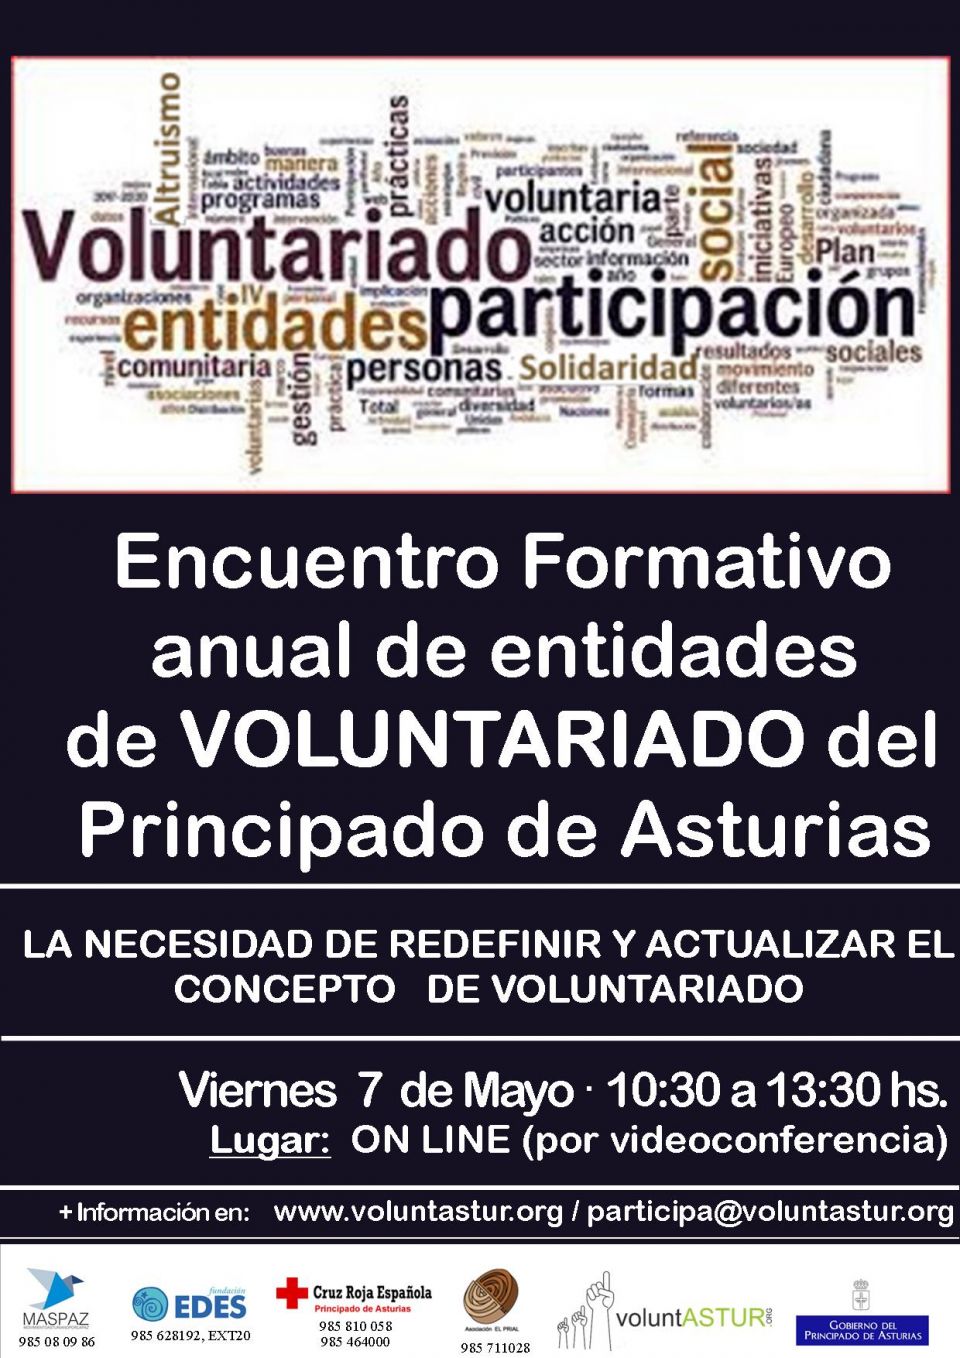 Encuentro Anual de Entidades de VOLUNTARIADO del Principado de Asturias